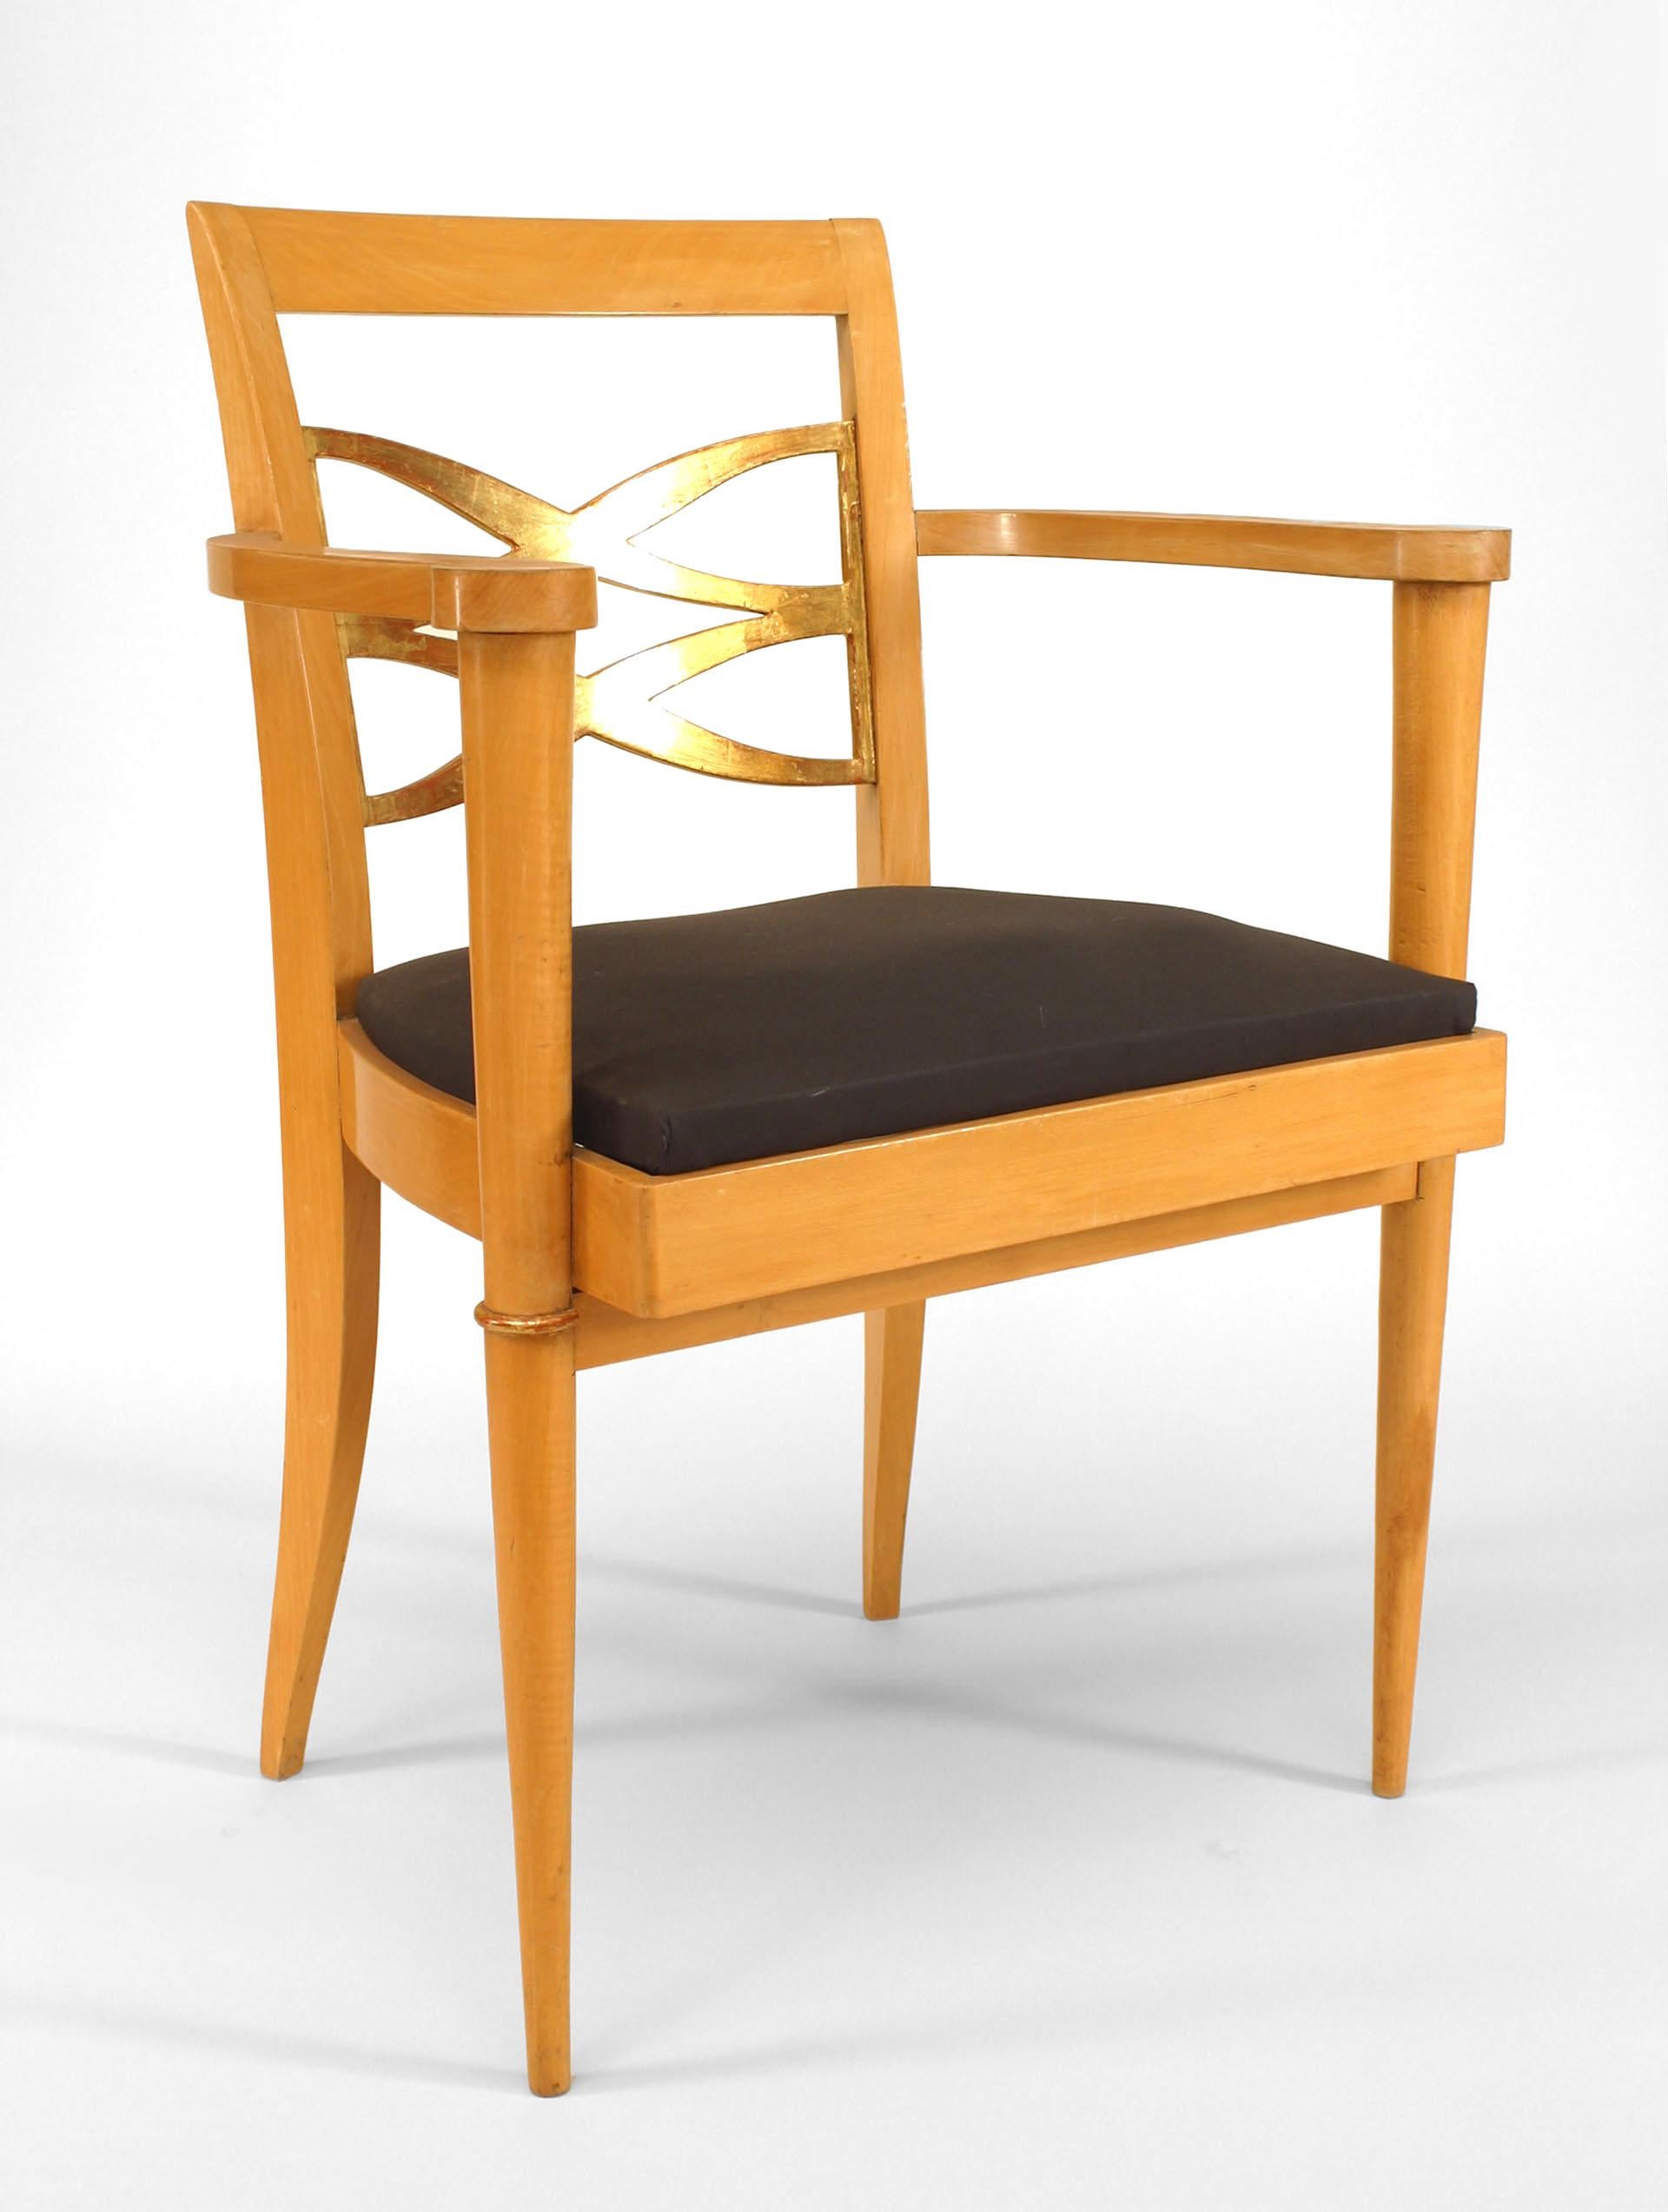 Paire de fauteuils français en sycomore des années 1940, avec dossier et garniture dorés et siège à glissière (att : BATISTIN SPADE) (une 3ème chaise simple est également disponible 058792A)
